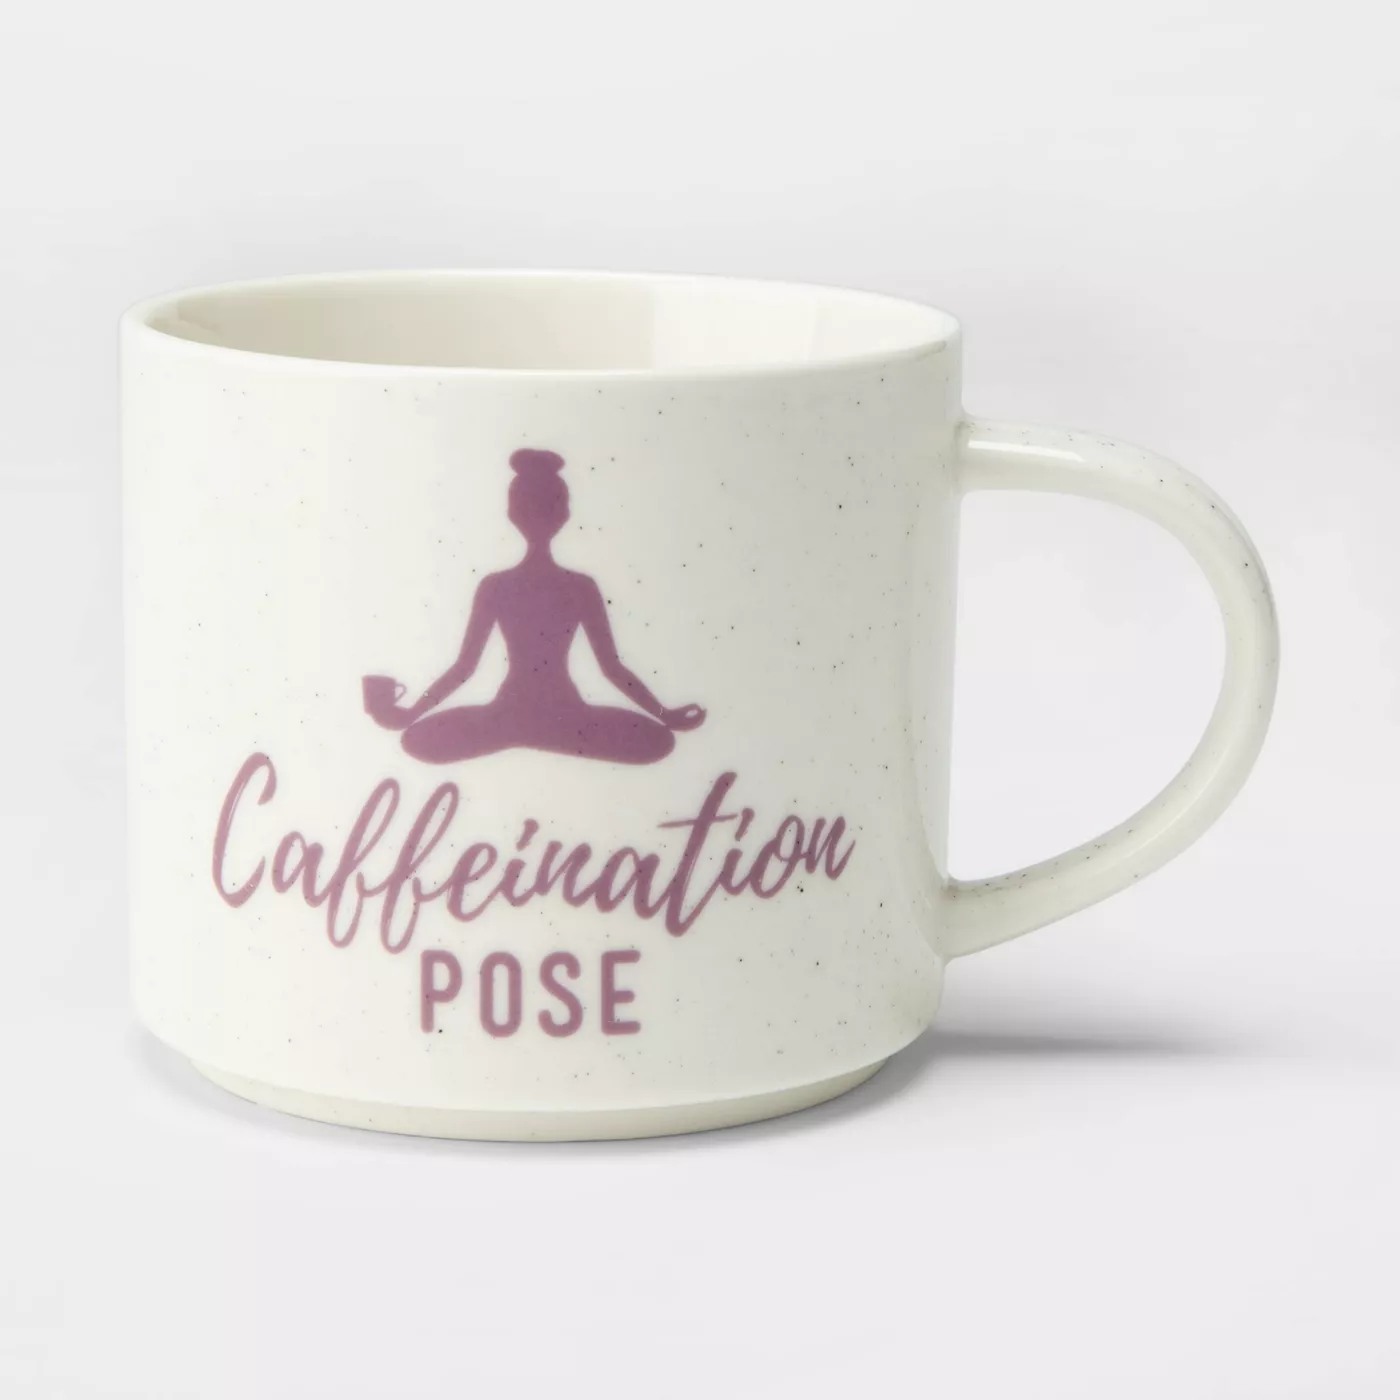 16oz Porcelain Caffeination Pose Mug Cream - Thresholdâ¢ - image 1 of 1